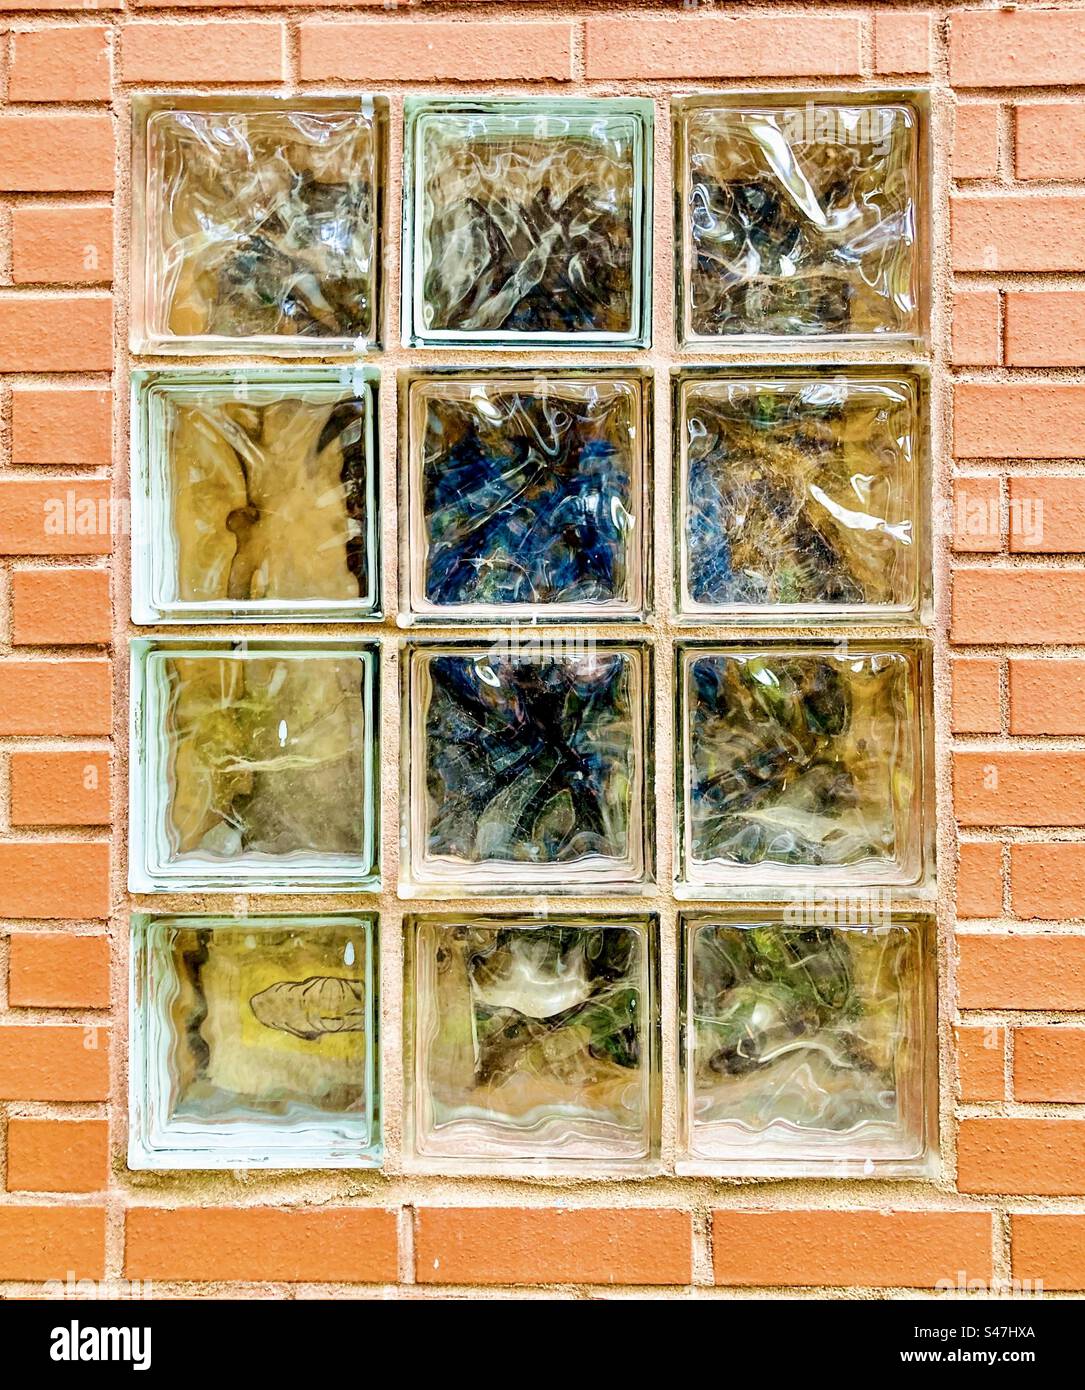 Glasblockfenster in einer Hintergasse. Stockfoto